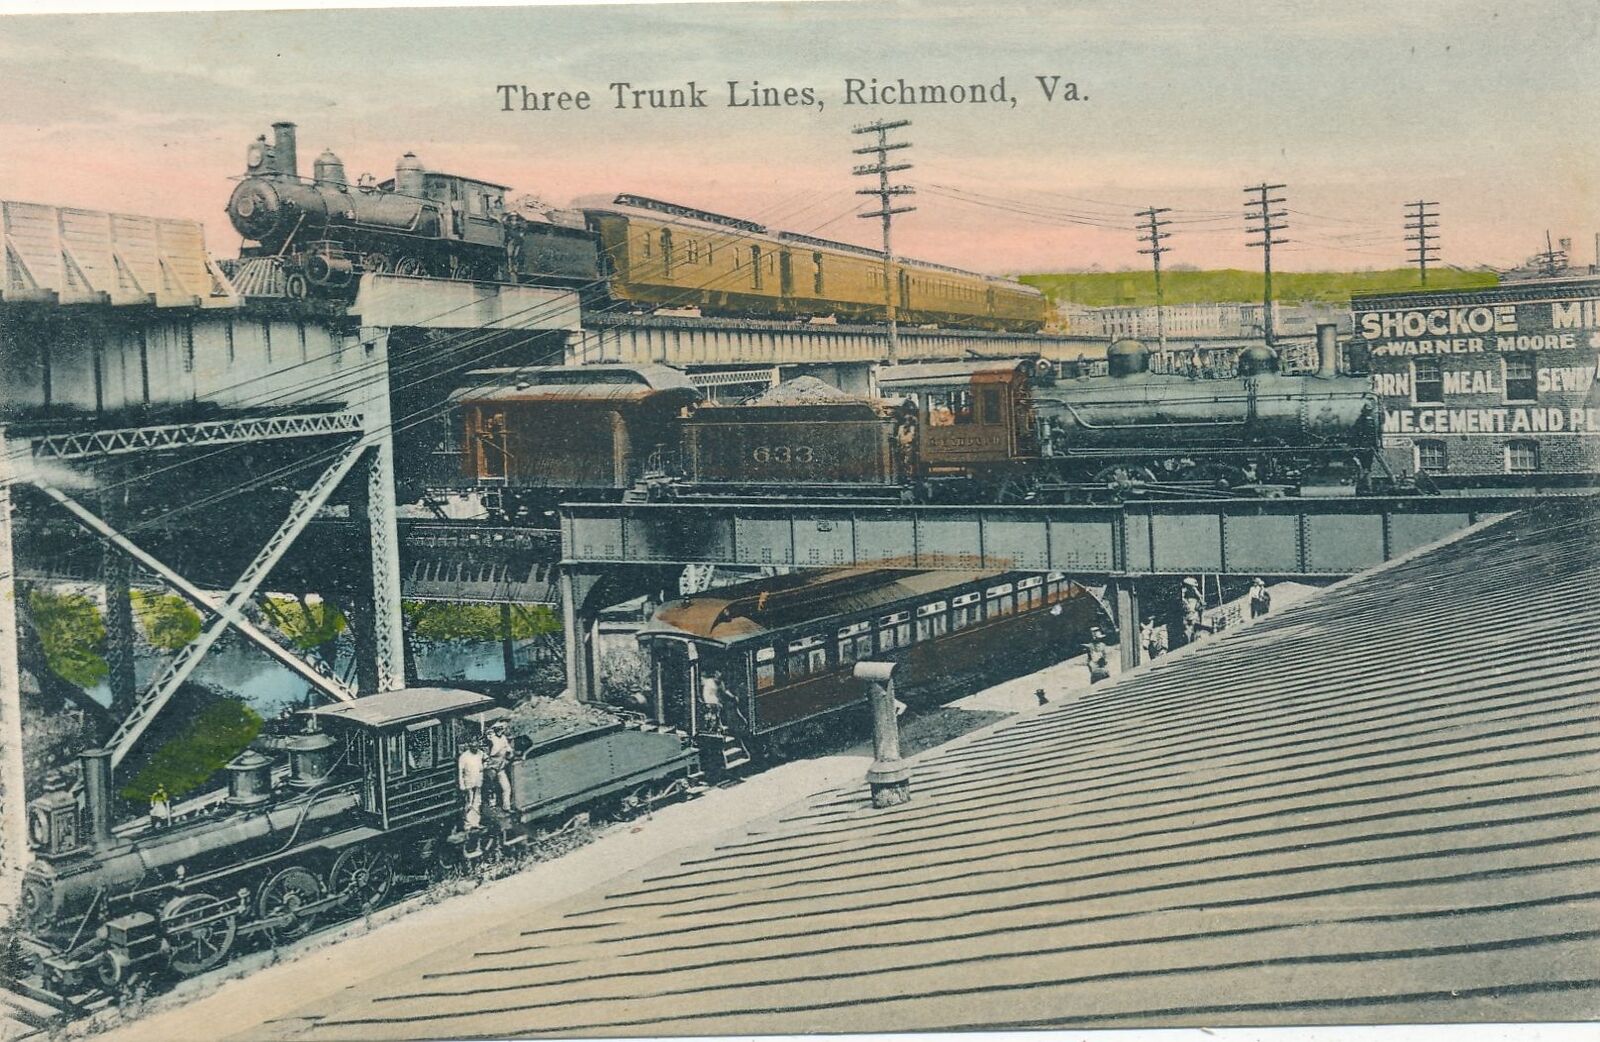 RICHMOND VA - Three Trunk Lines Postcard - udb (pre 1908)